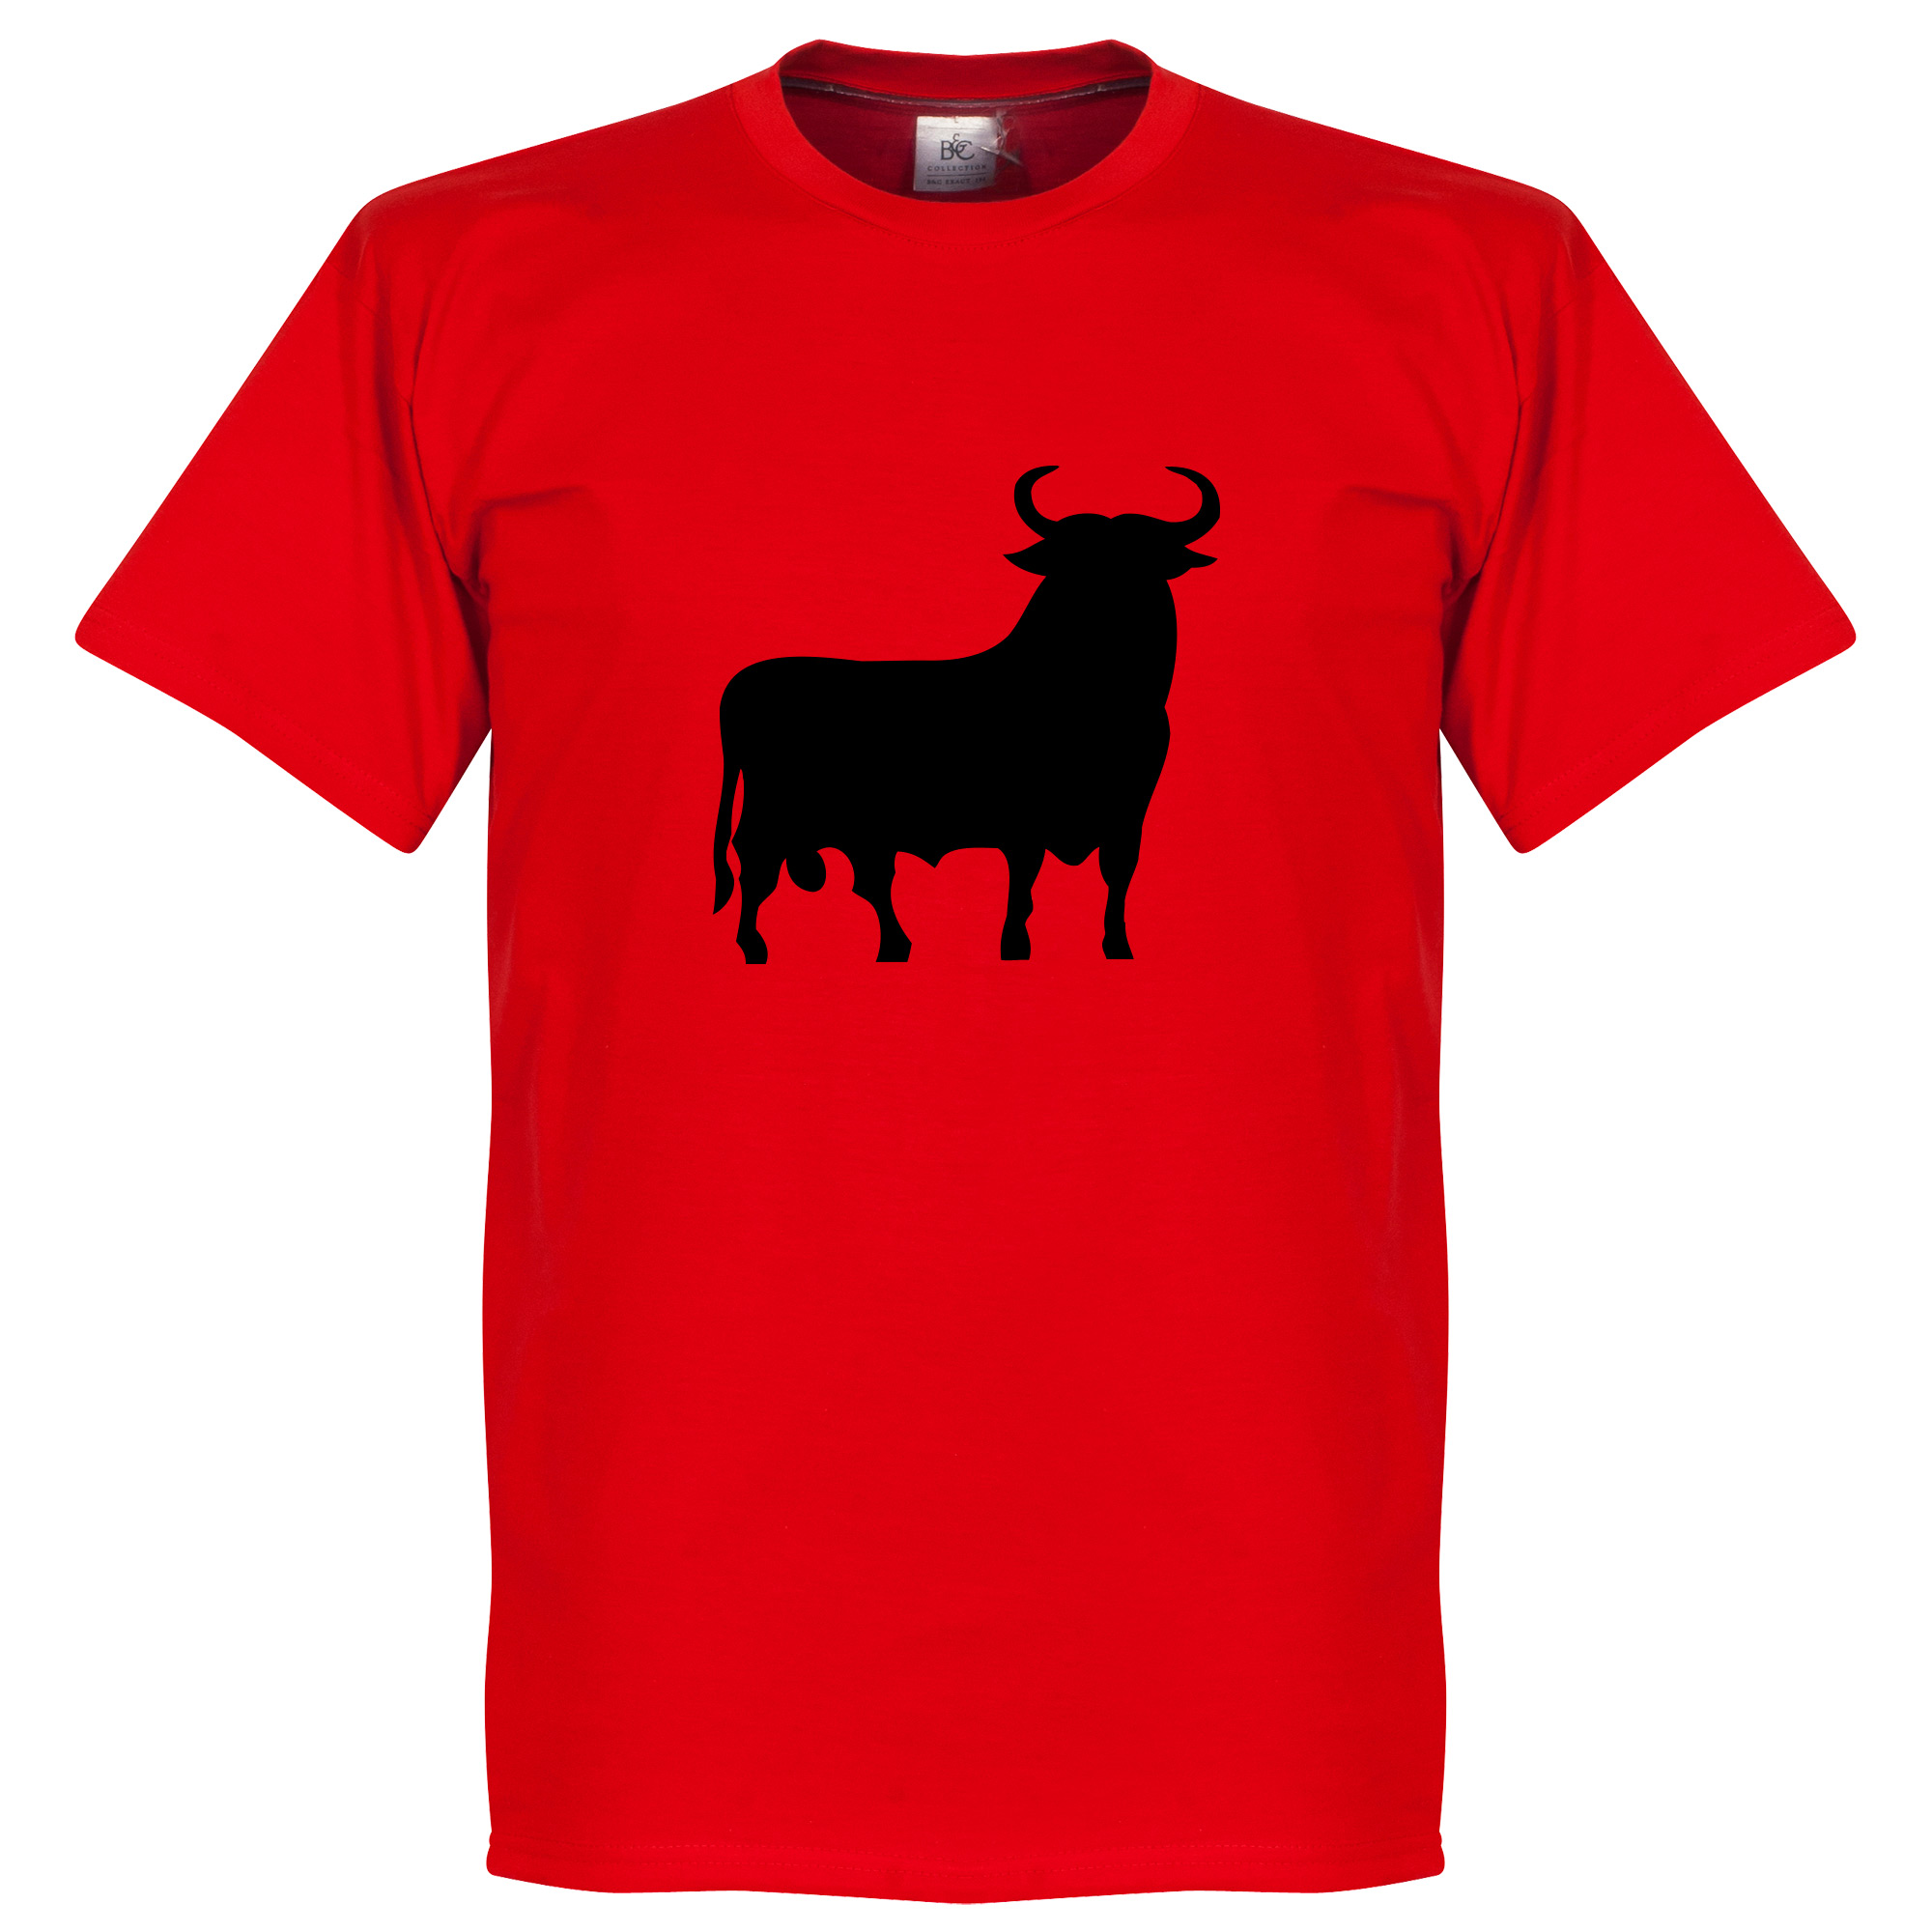 El Toro T-shirt S